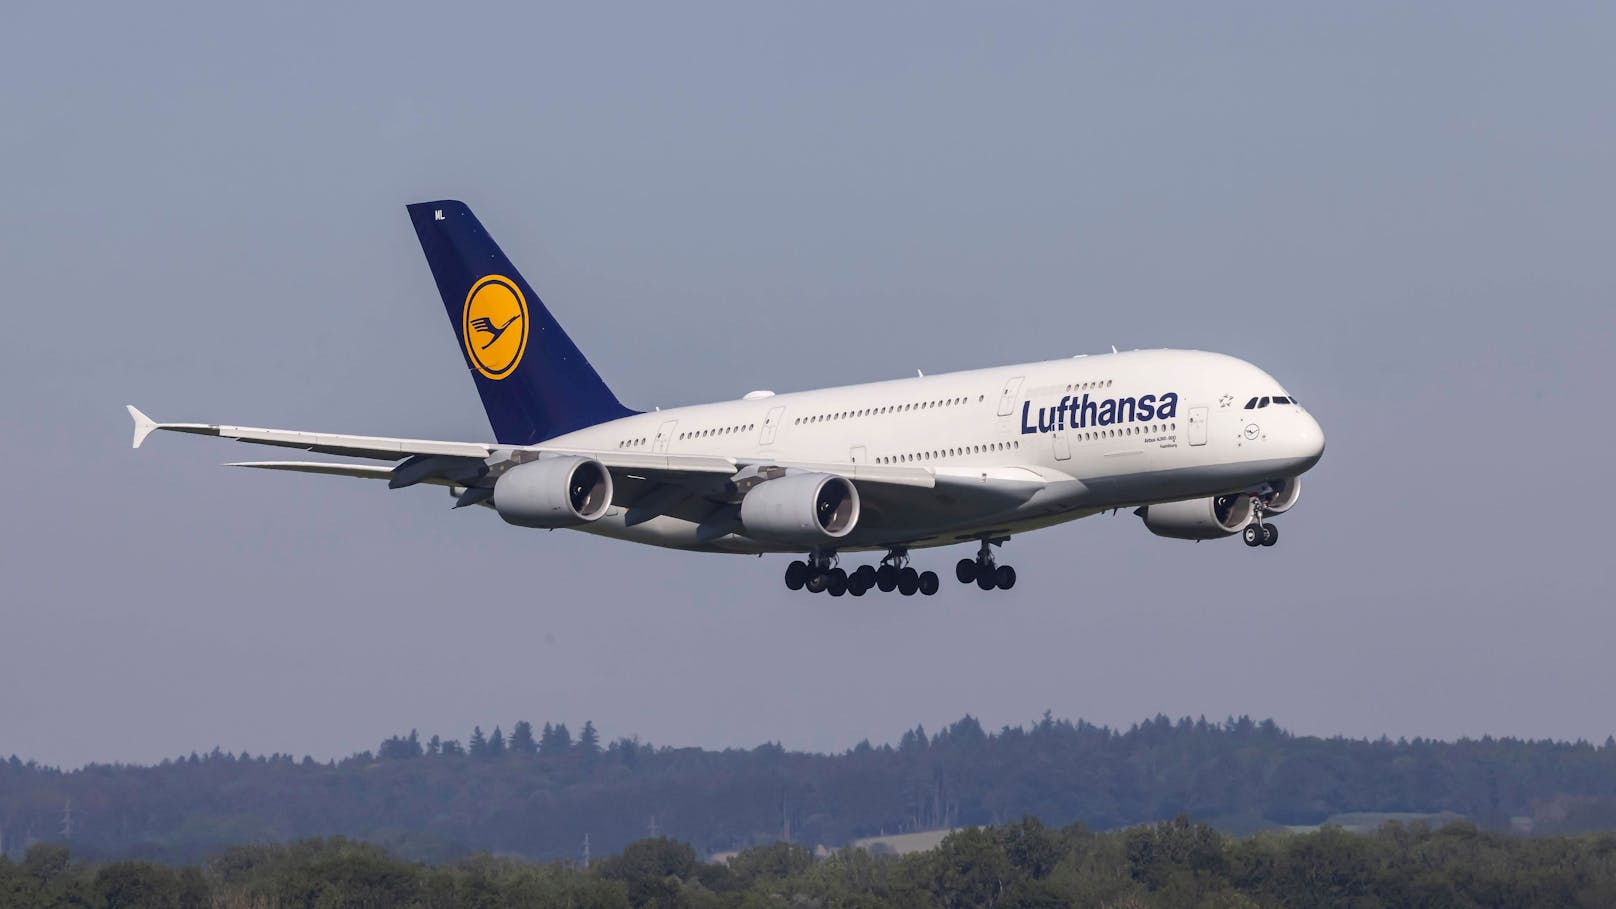 "Bring euch alle um" – Lufthansa-Flieger muss notlanden